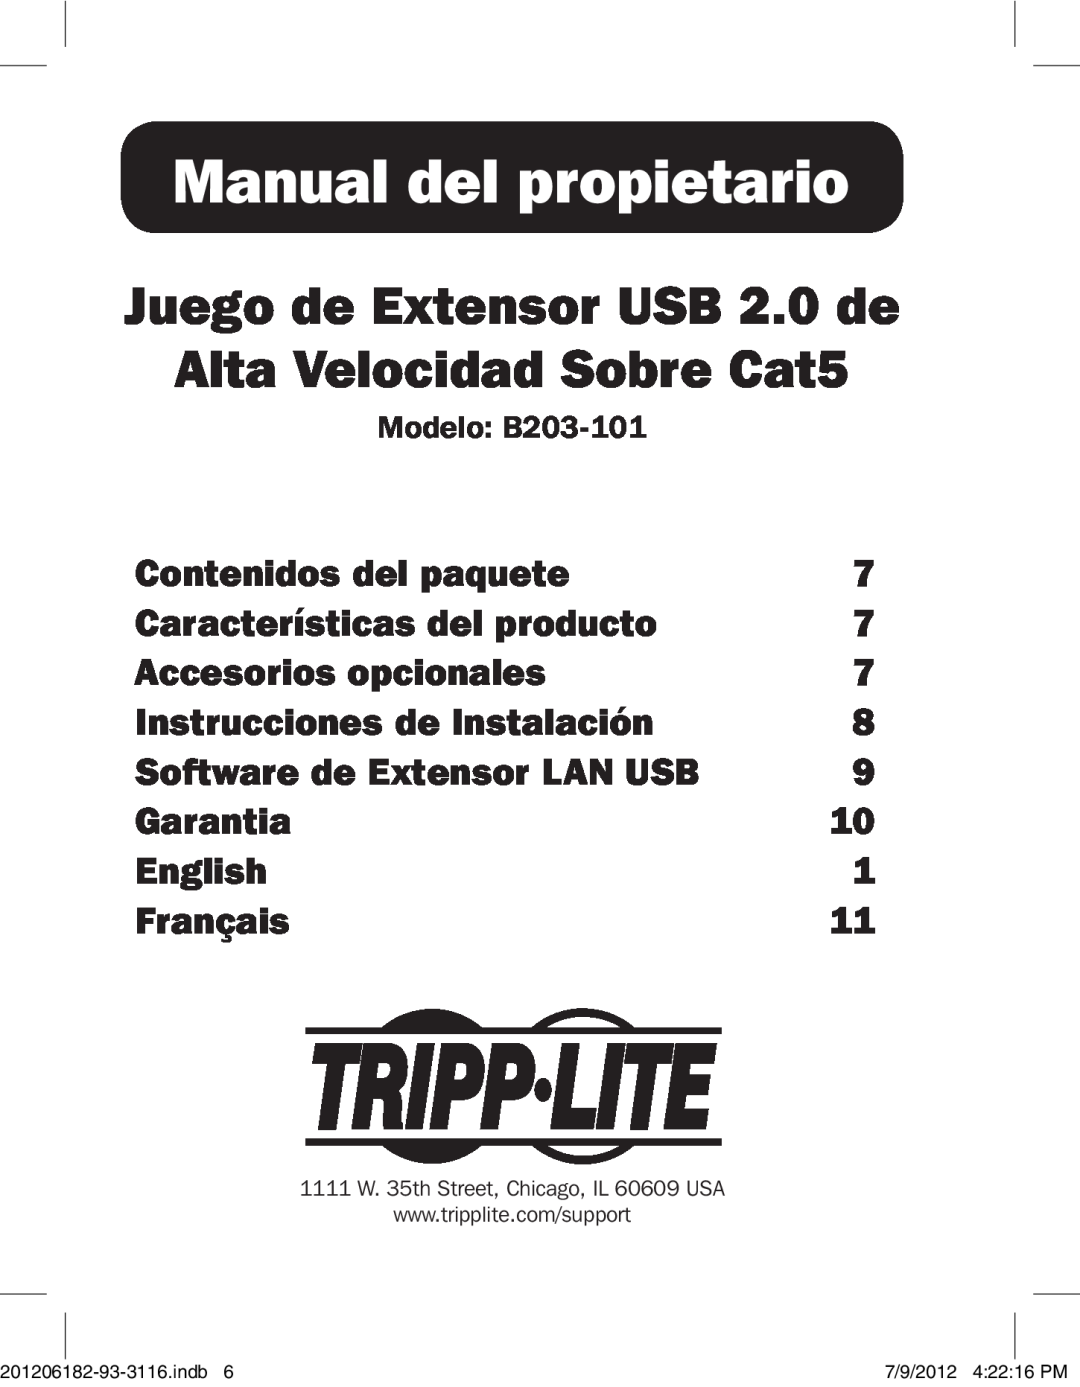 Tripp Lite B203-101 Manual del propietario, Juego de Extensor USB 2.0 de Alta Velocidad Sobre Cat5, Contenidos del paquete 